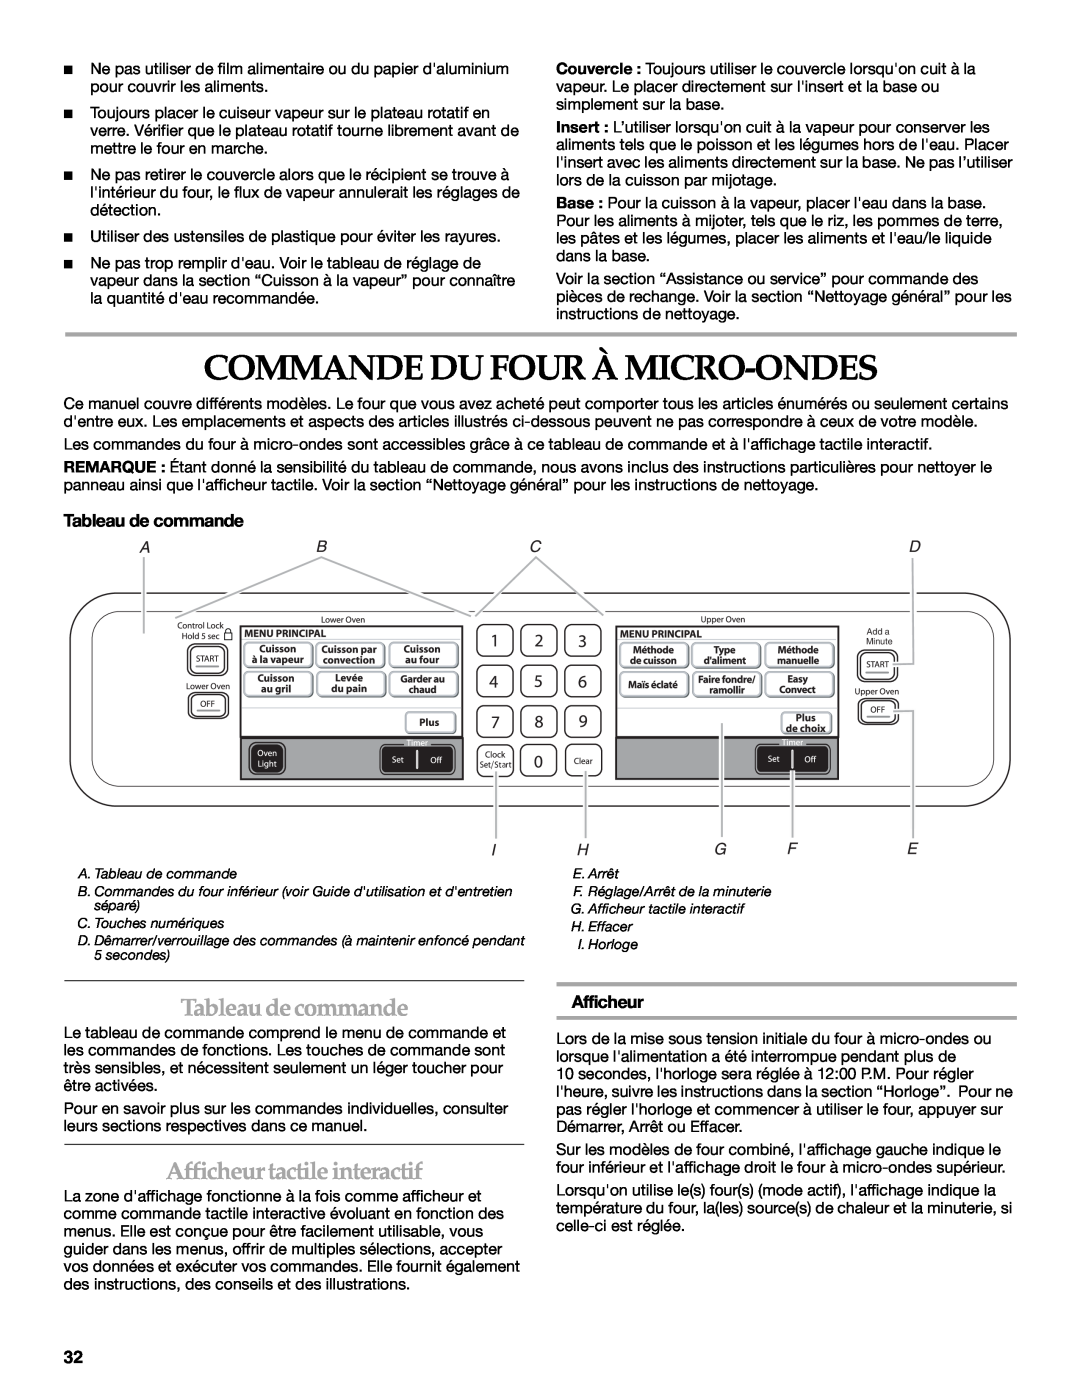 KitchenAid KEHU309 Commande Du Four À Micro-Ondes, Tableaudecommande, Afficheur tactile interactif, Tableau de commande 